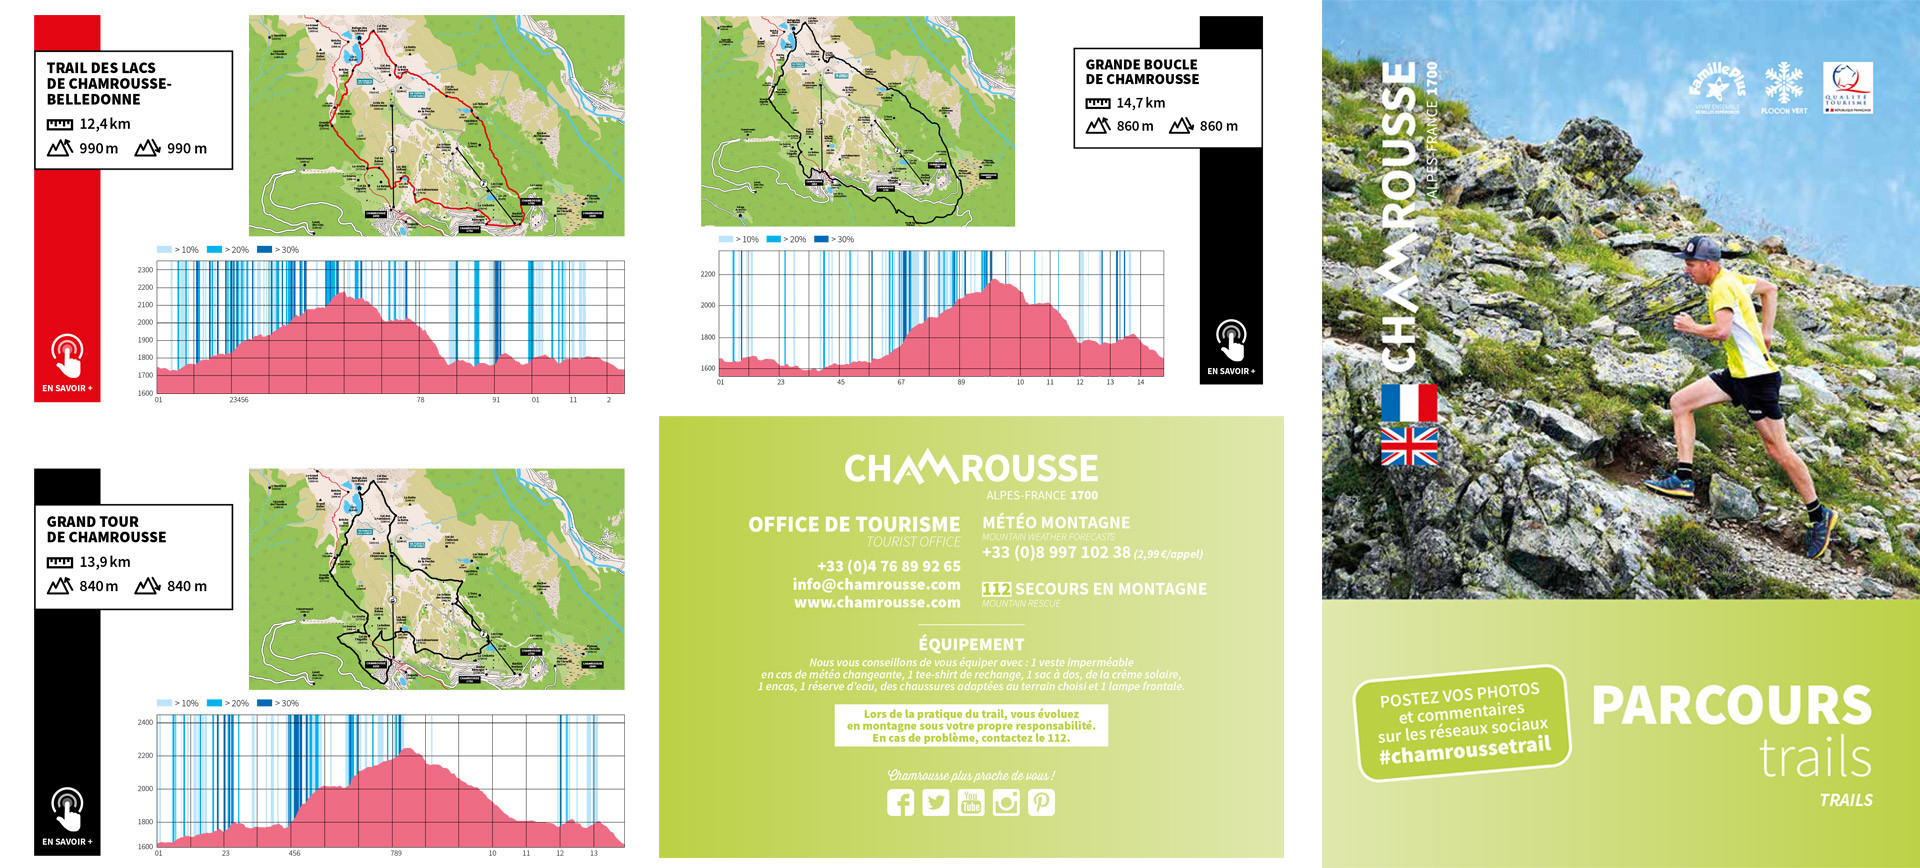 Chamrousse plan trail parcours difficile été 2022 station montagne grenoble belledonne isère alpes france